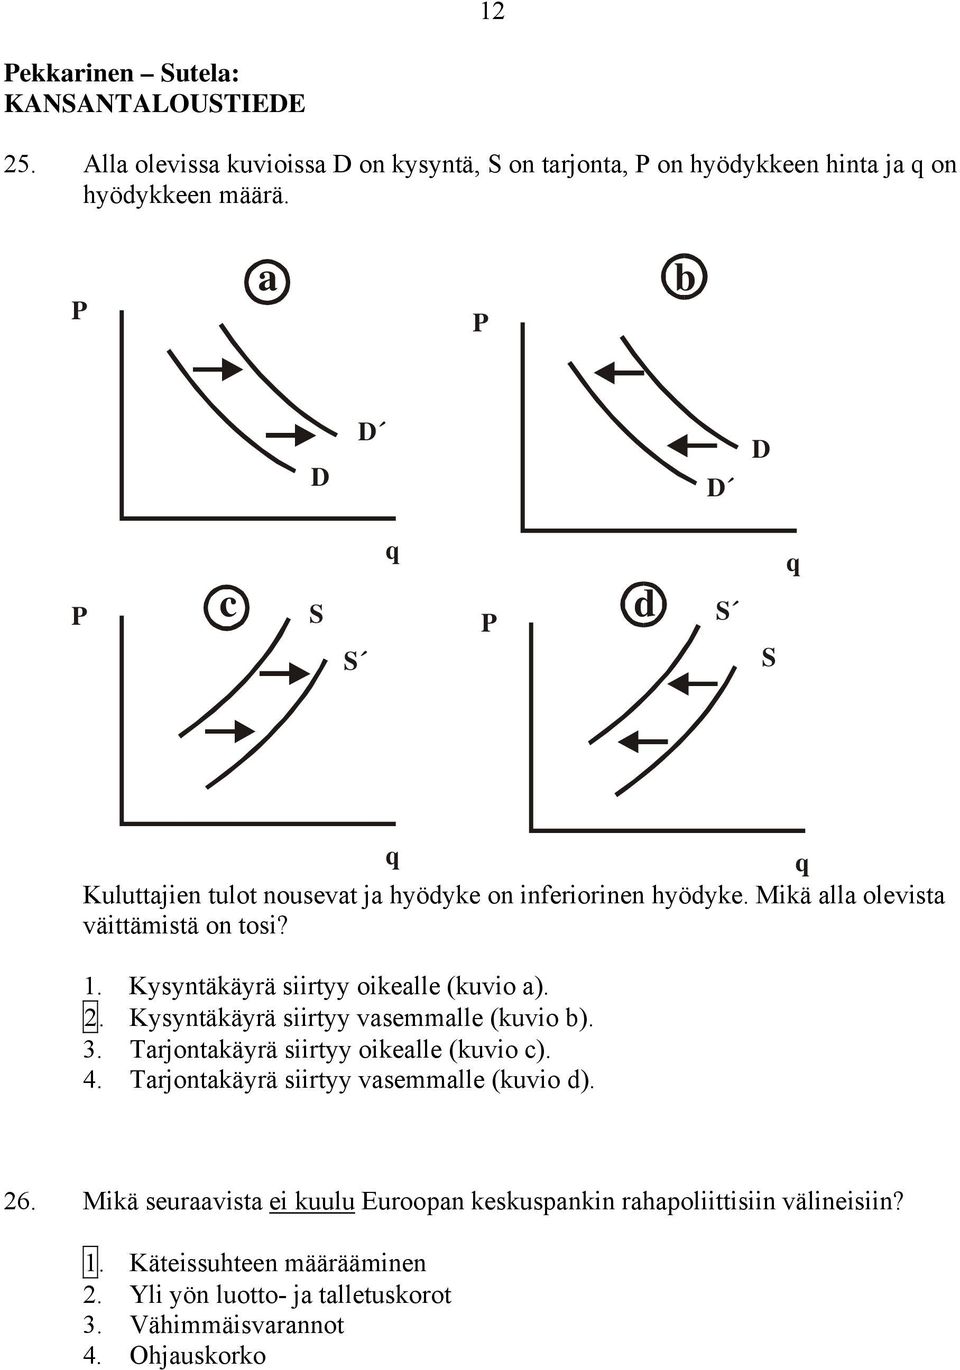 Kysyntäkäyrä siirtyy oikealle (kuvio a). 2. Kysyntäkäyrä siirtyy vasemmalle (kuvio b). 3. Tarjontakäyrä siirtyy oikealle (kuvio c). 4.